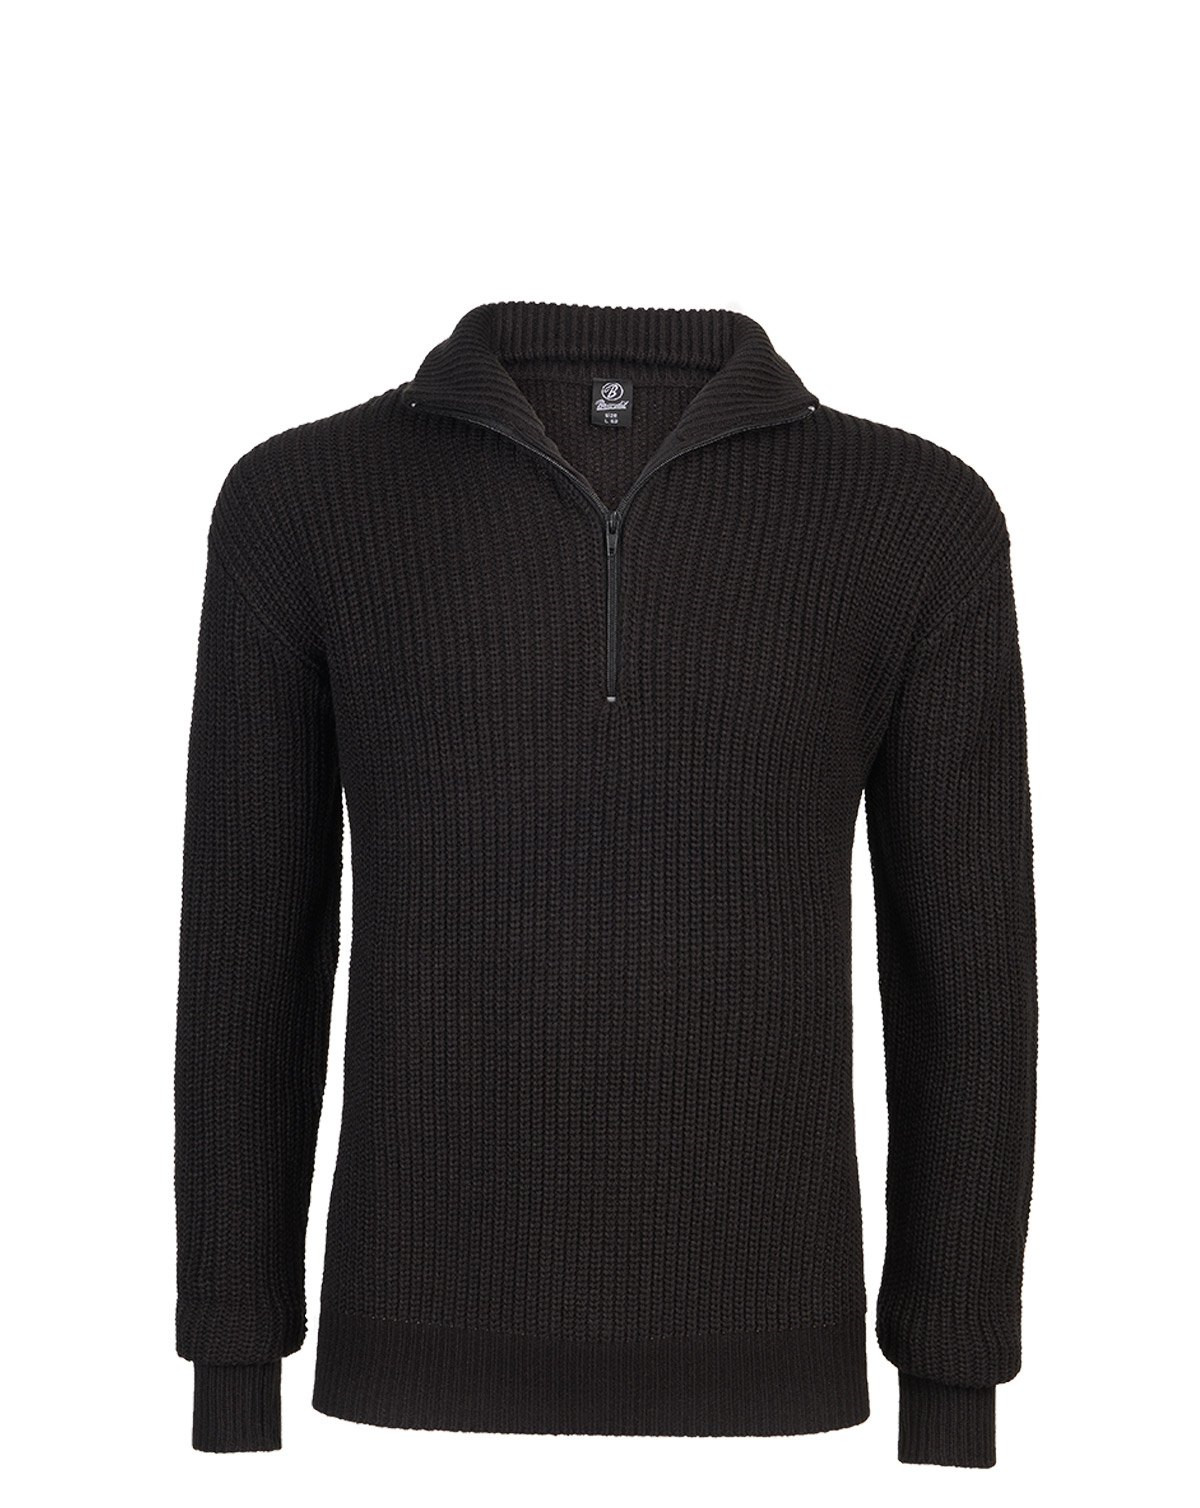 Brandit Marine Pullover Troyer Sweater (Sort, 2XL)